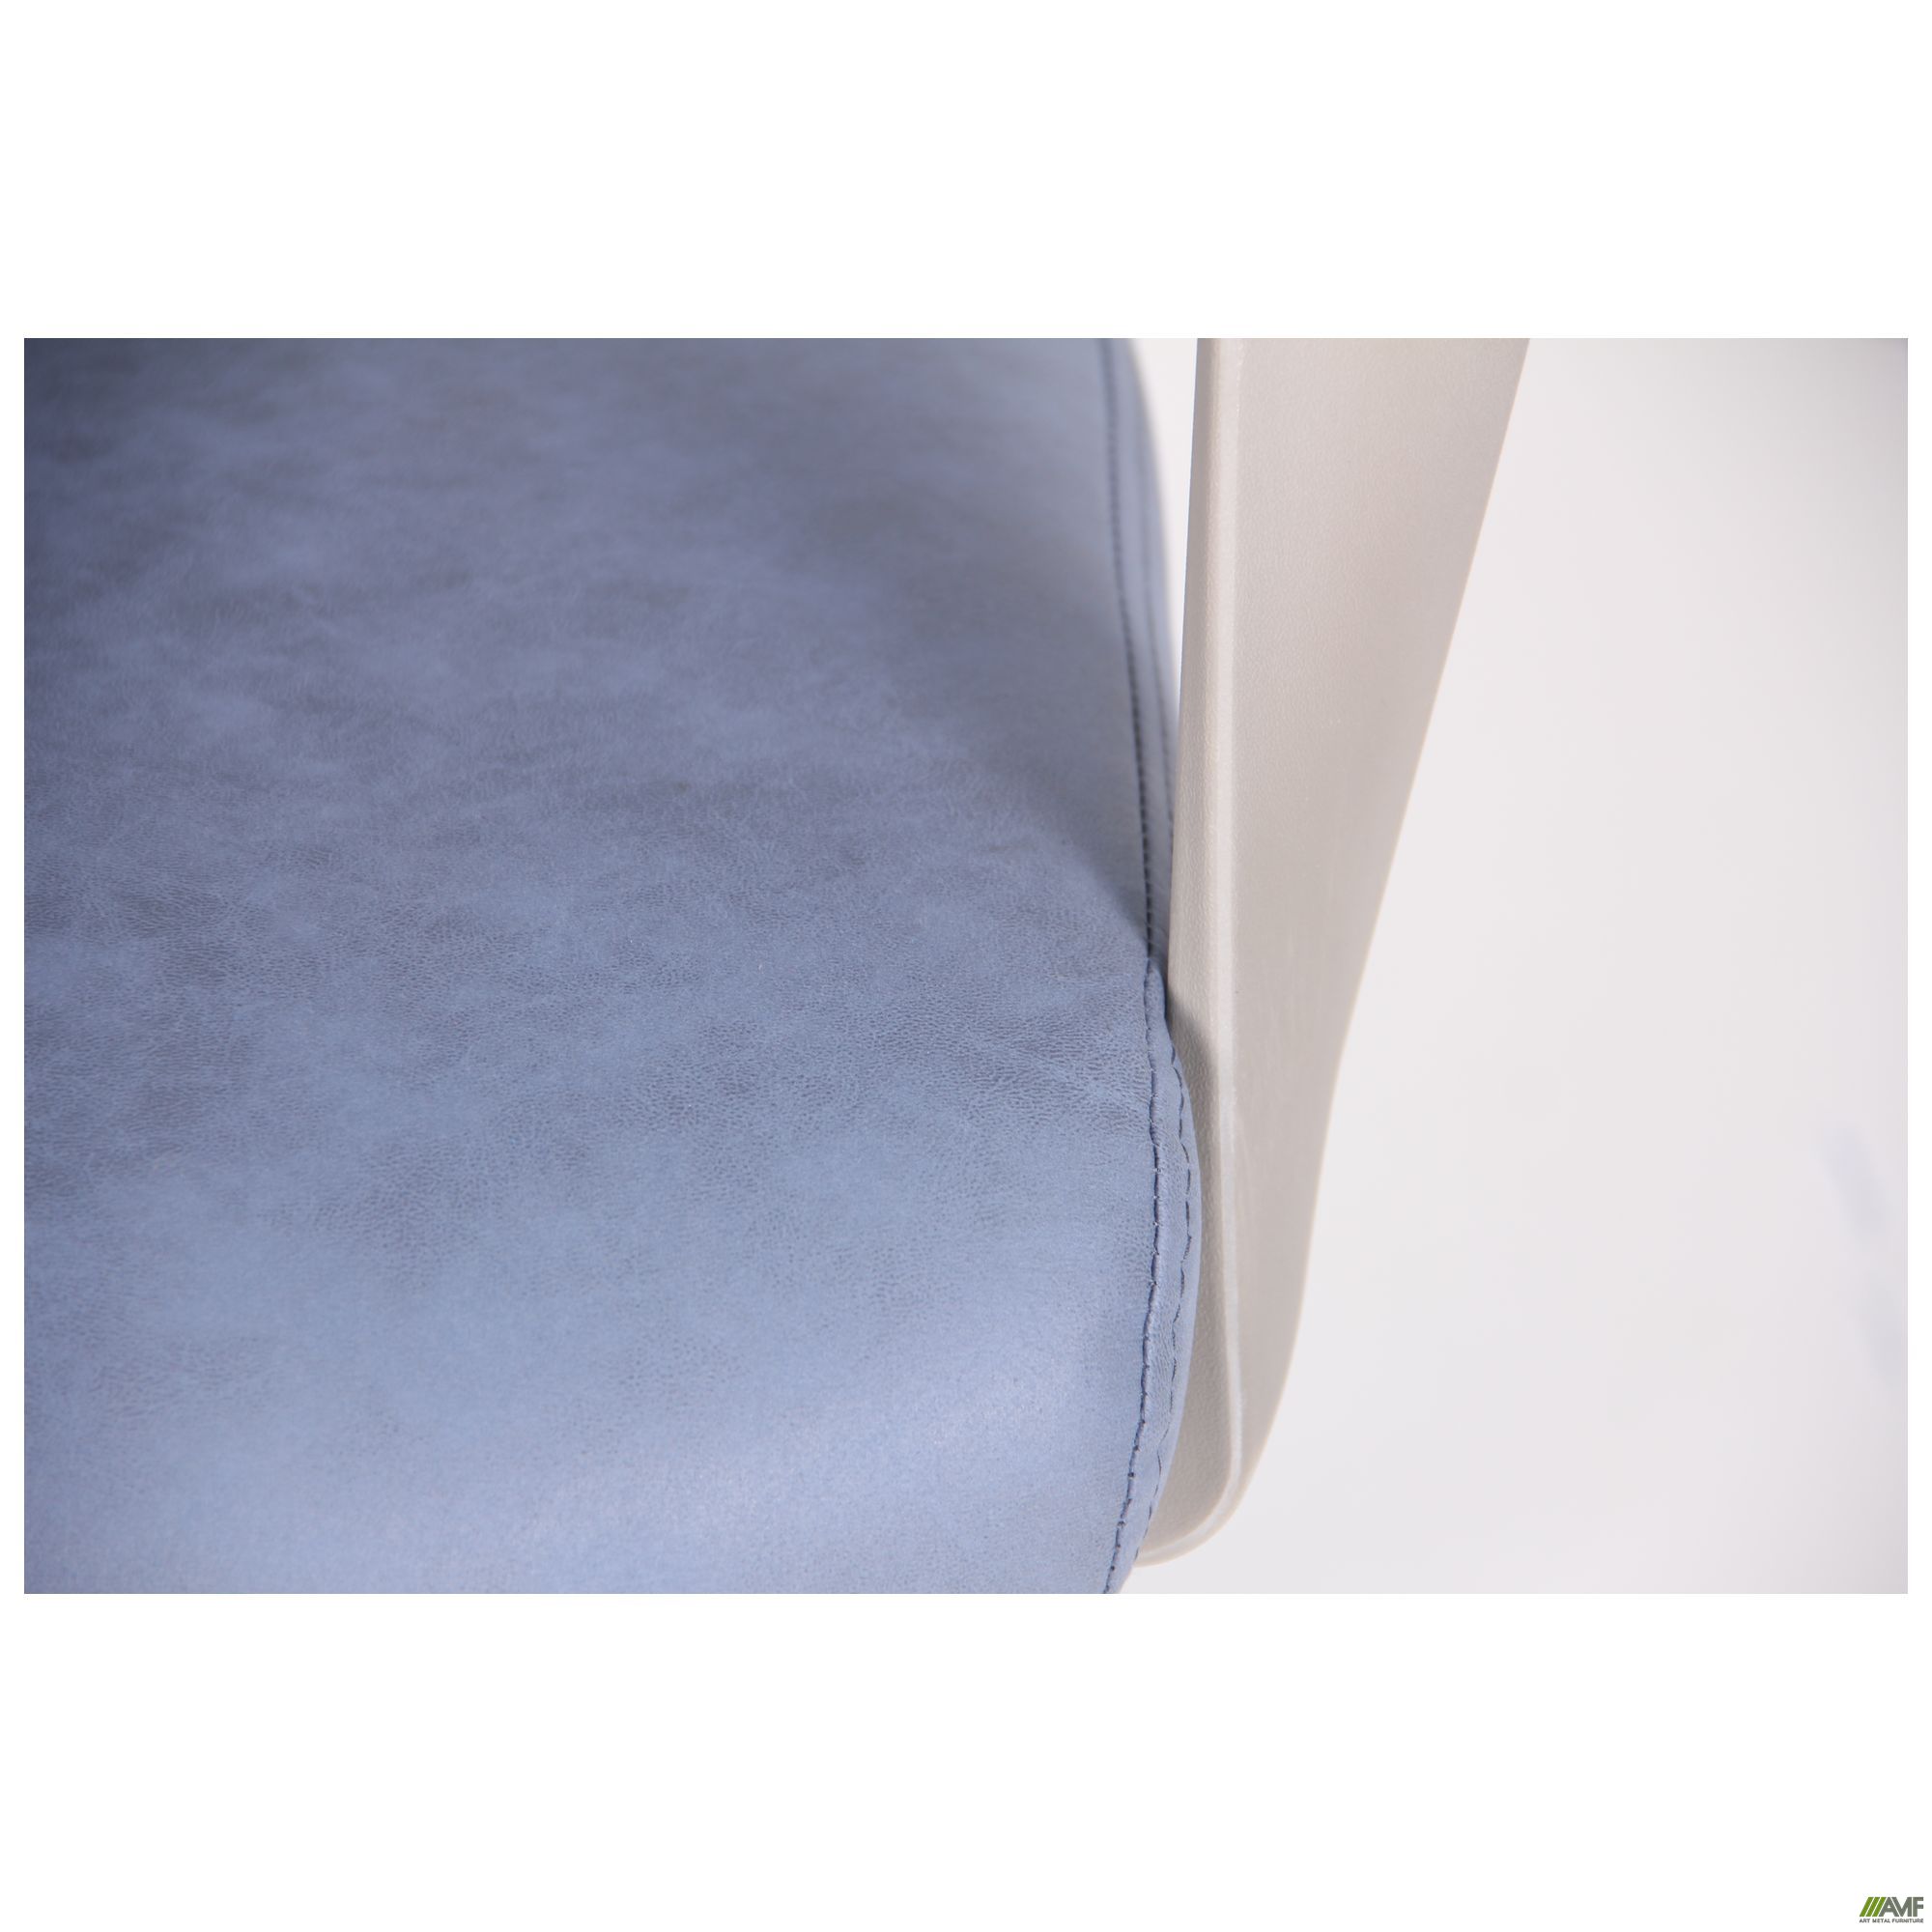 Фото 9 - Кресло Spiral Grey сине-серый 